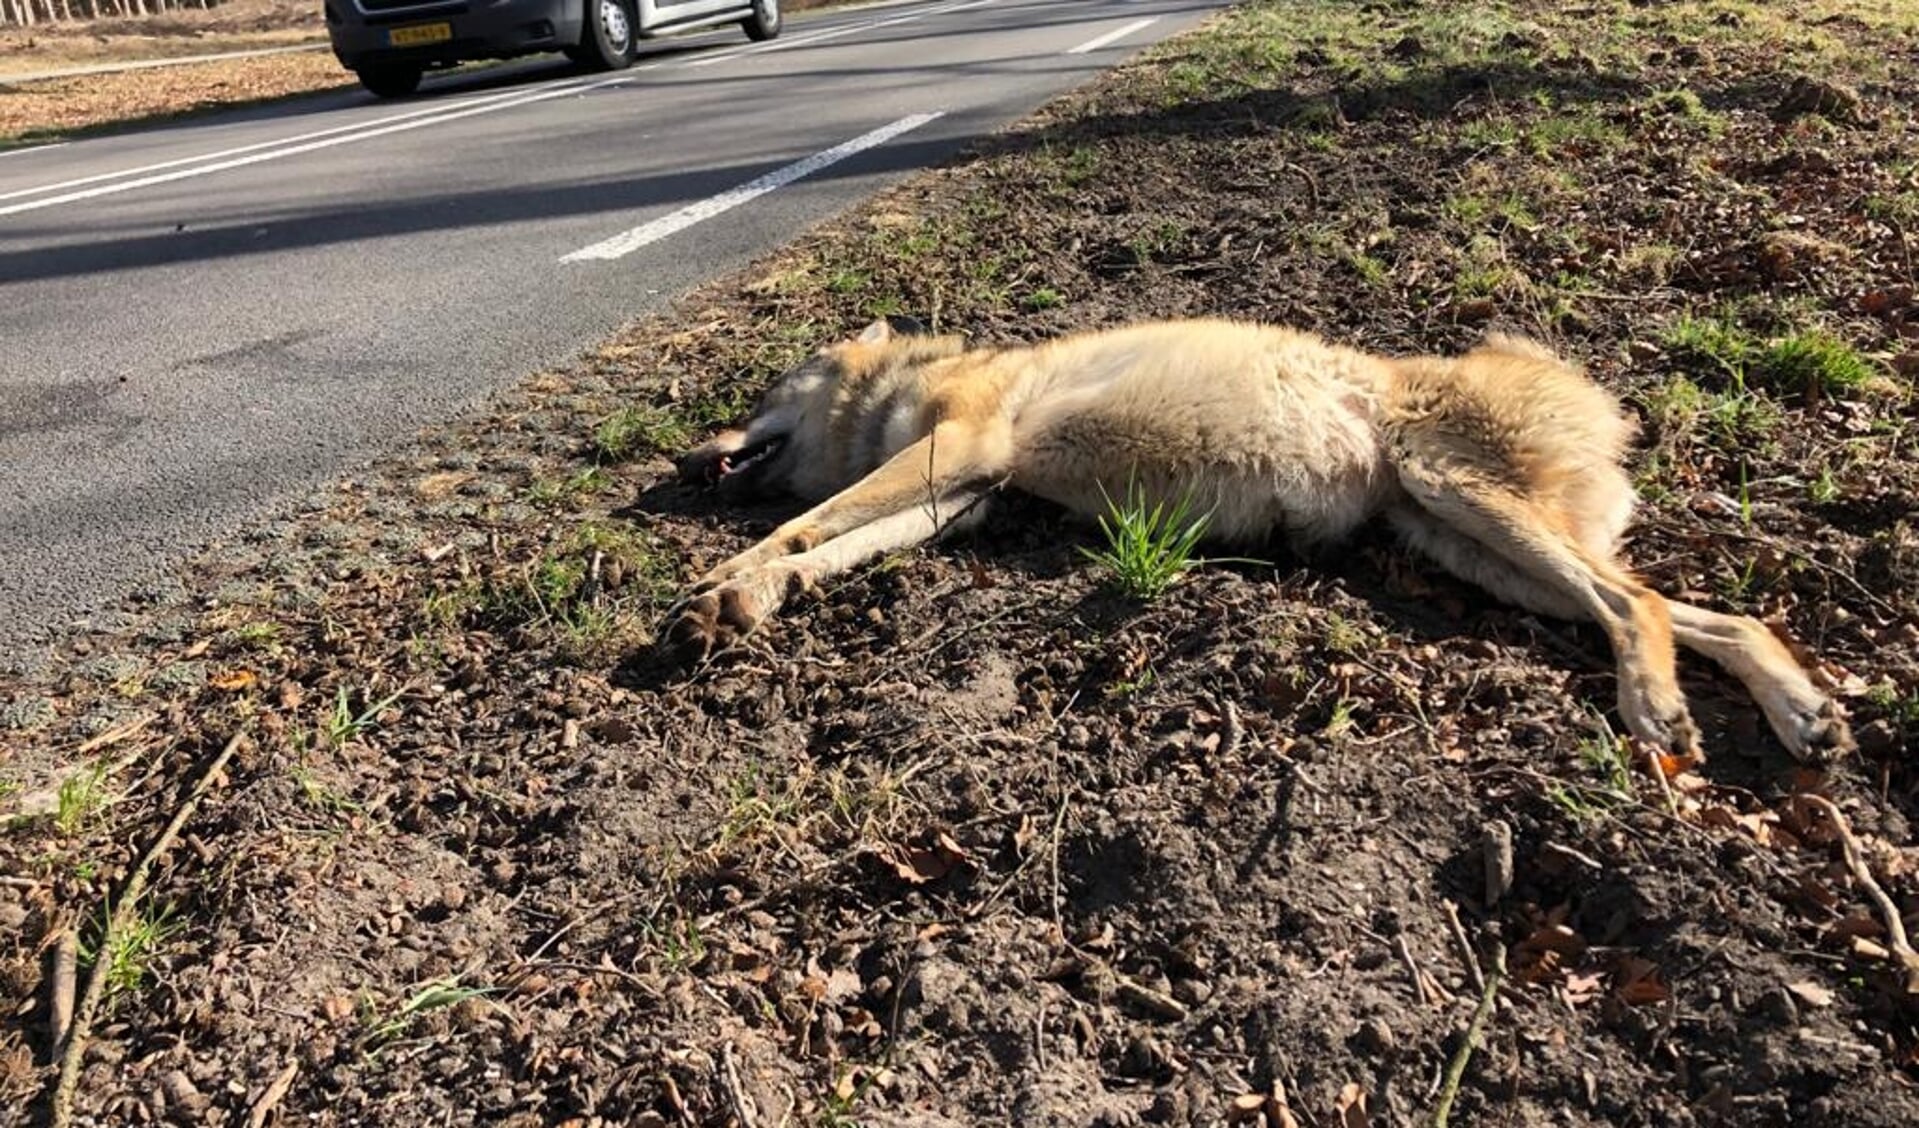 De doodgereden wolvin, afgelopen zaterdag langs de N224 in Ede.